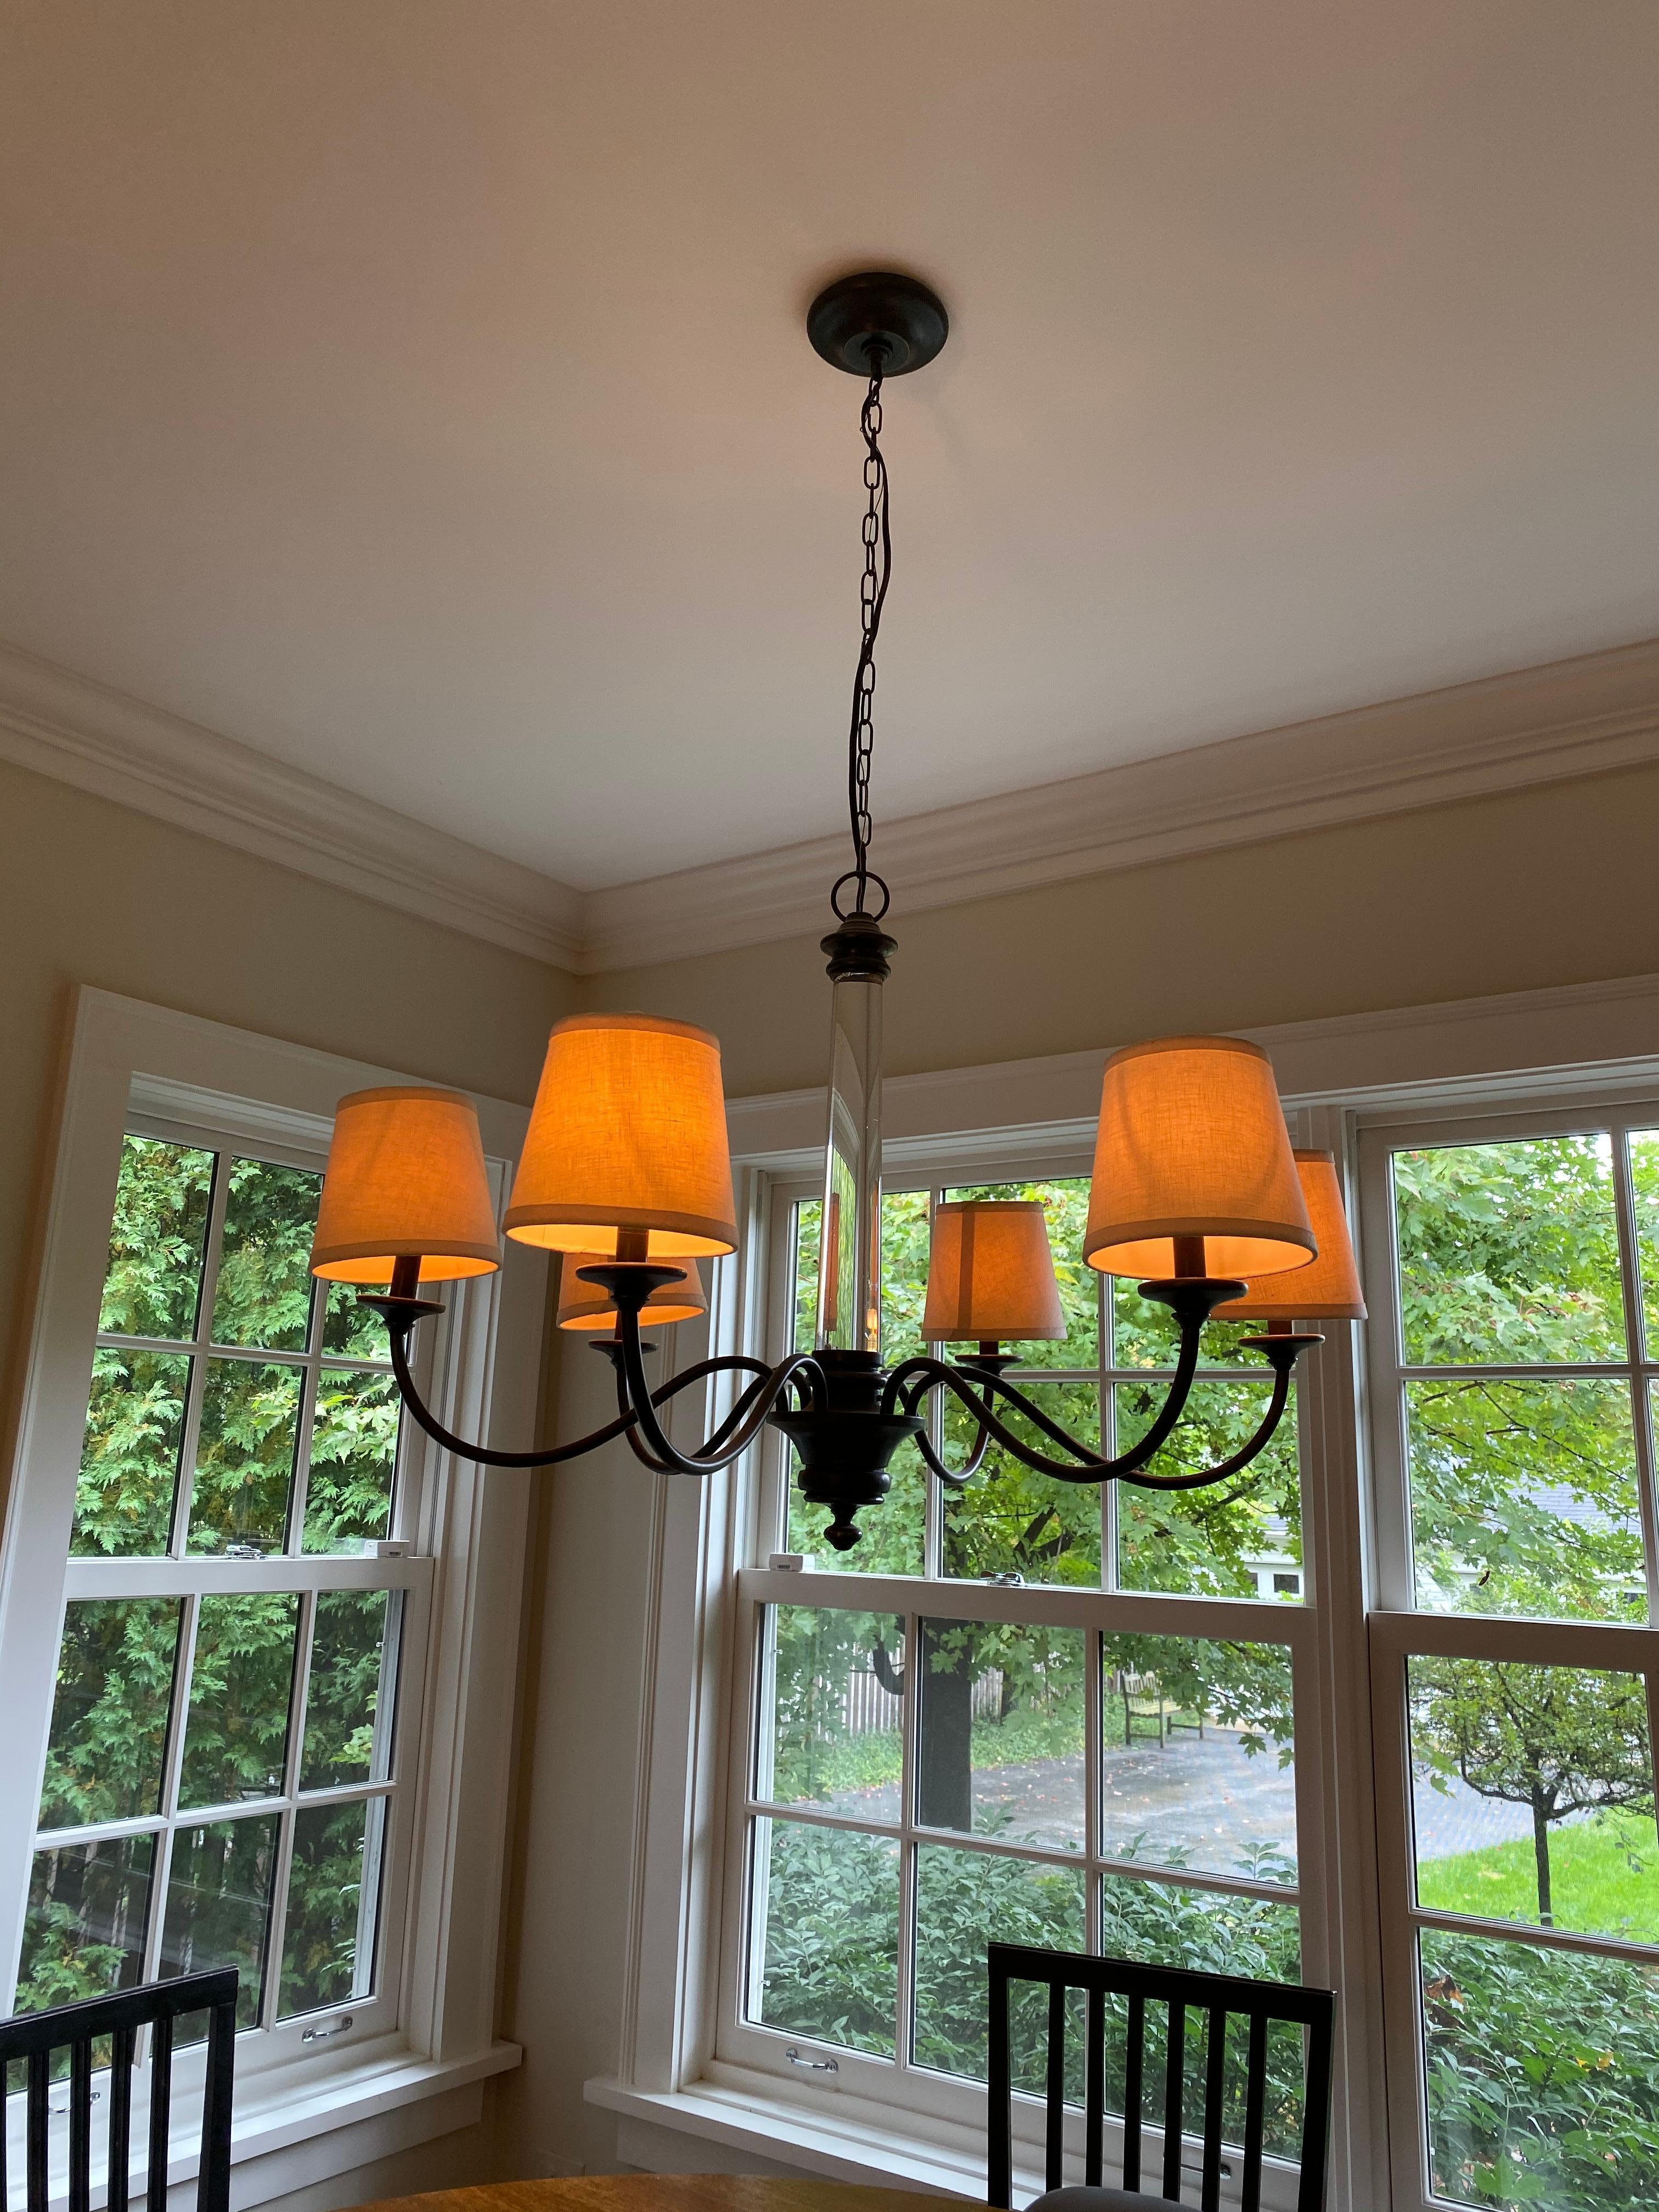 rh lighting chandelier